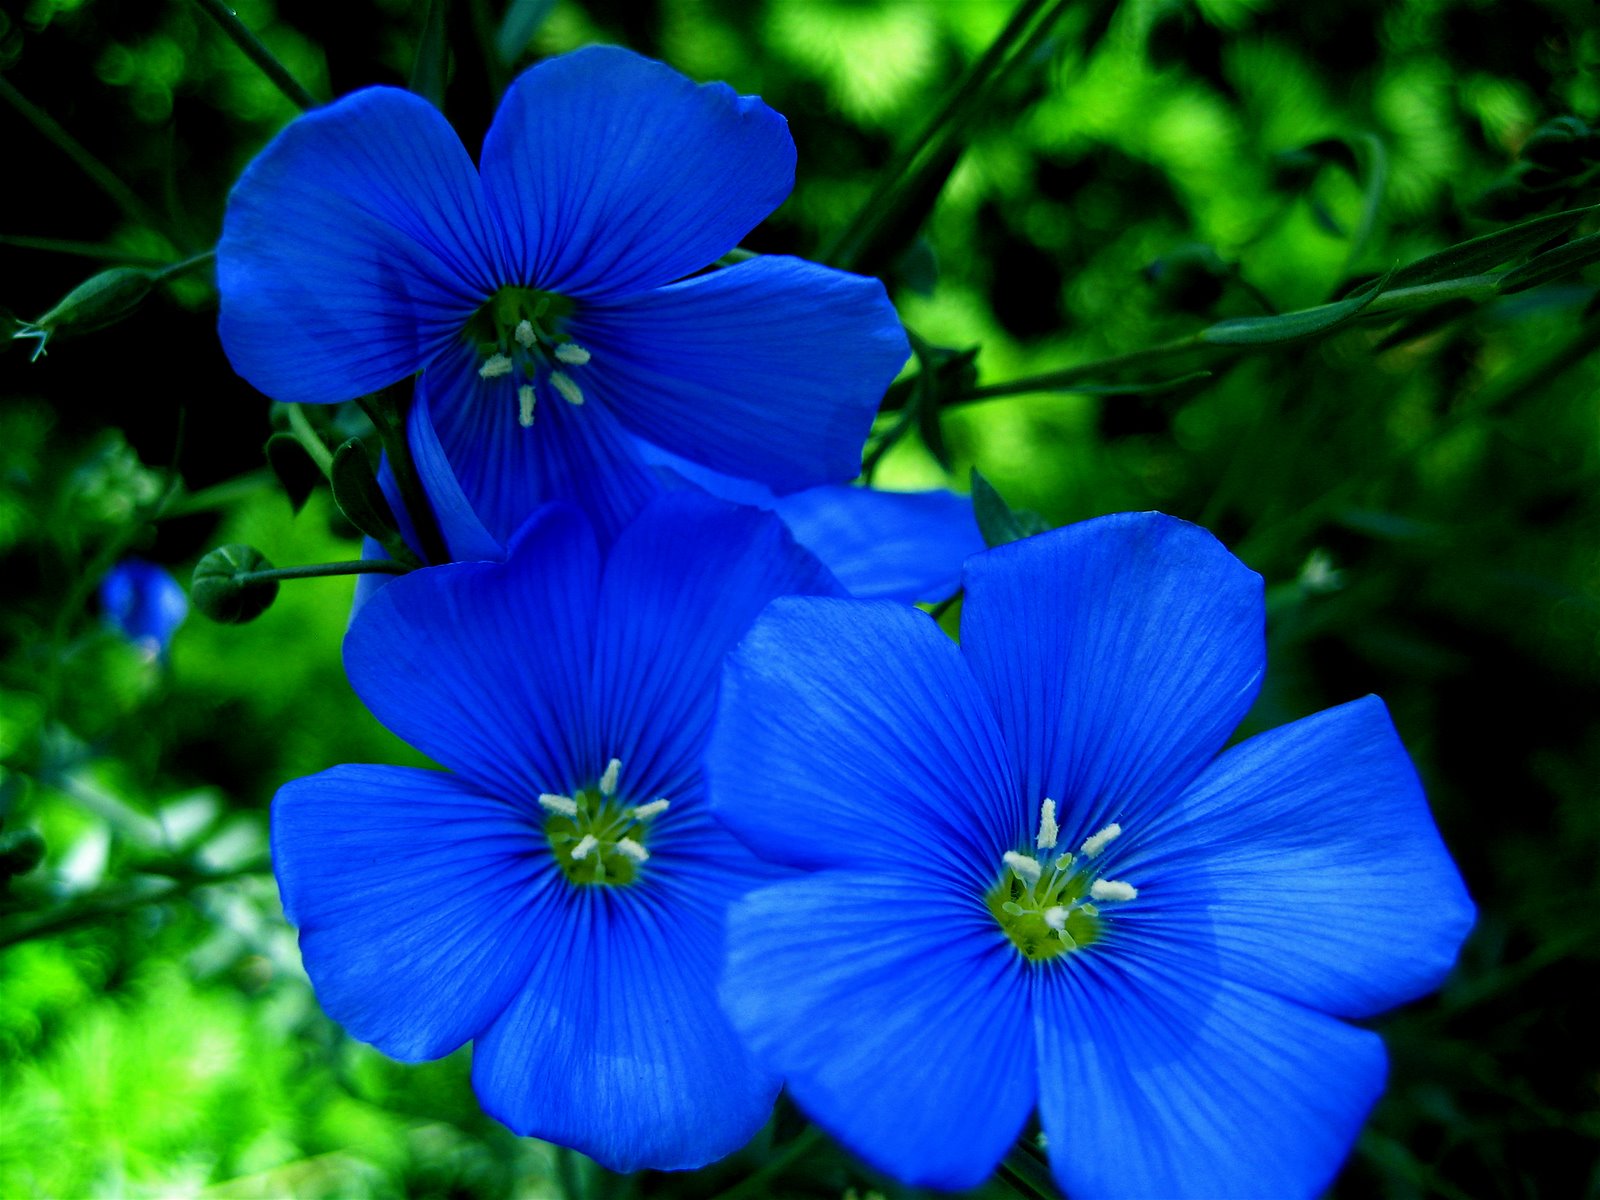 Blue Flowers Bloom in Garden